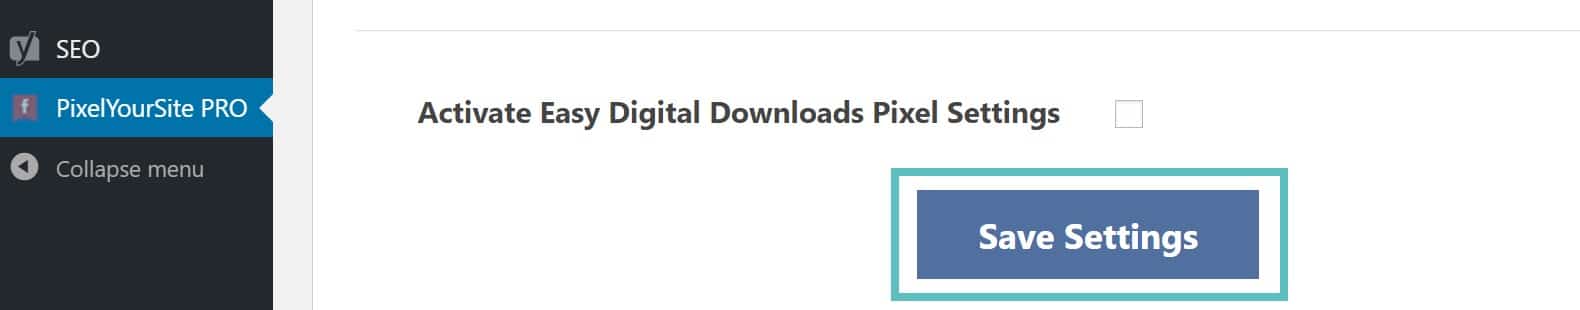 Attivare il pixel di Easy Digital Downloads